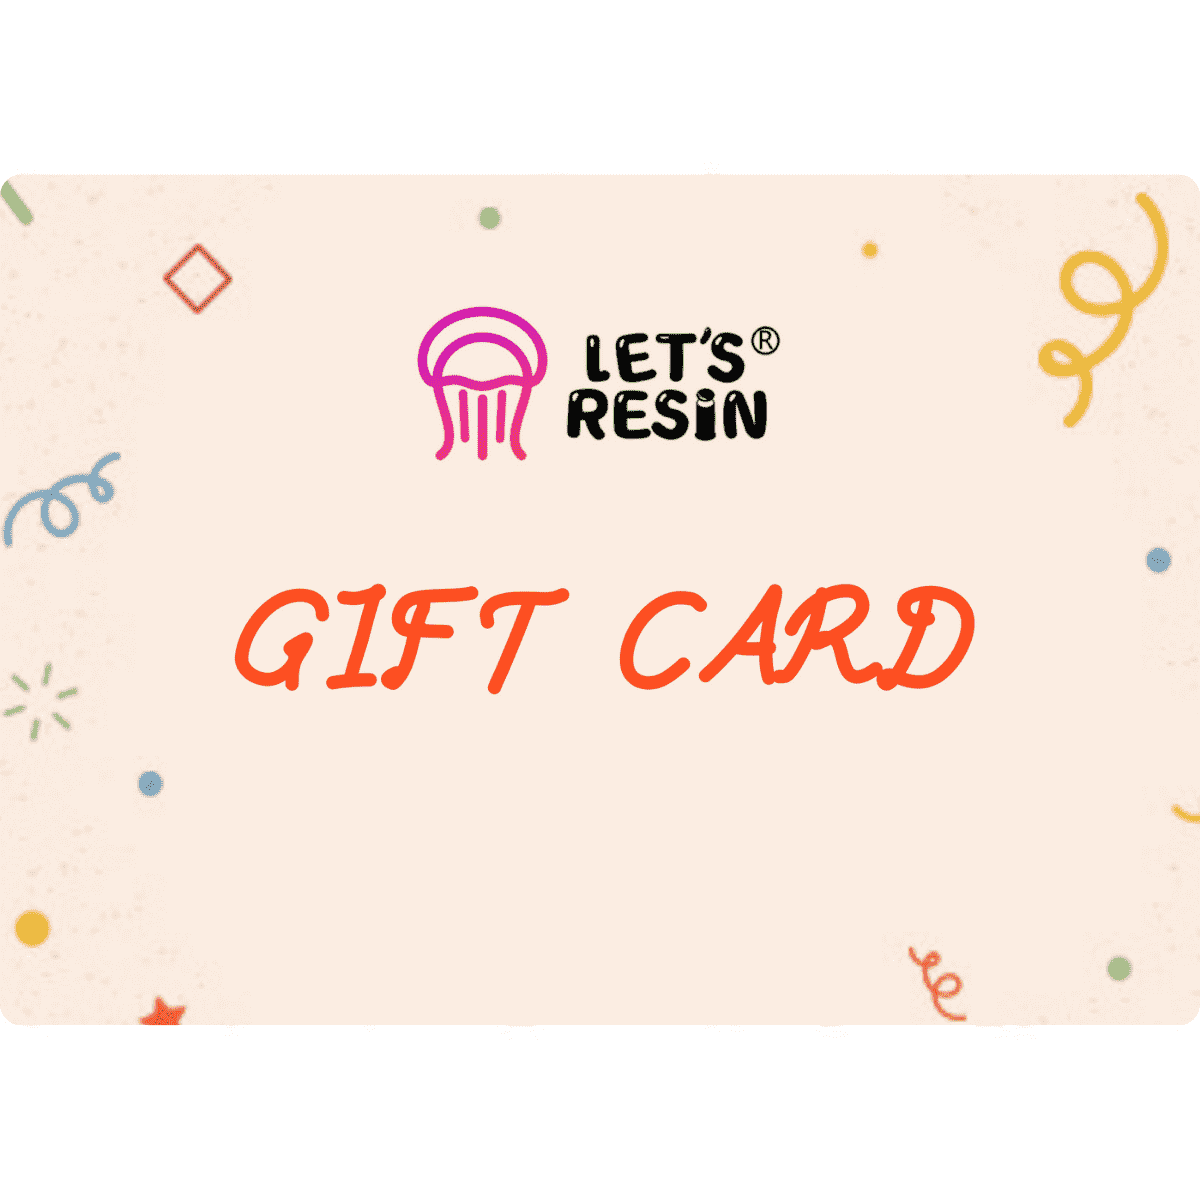 LET'S RESIN E-Gift Card